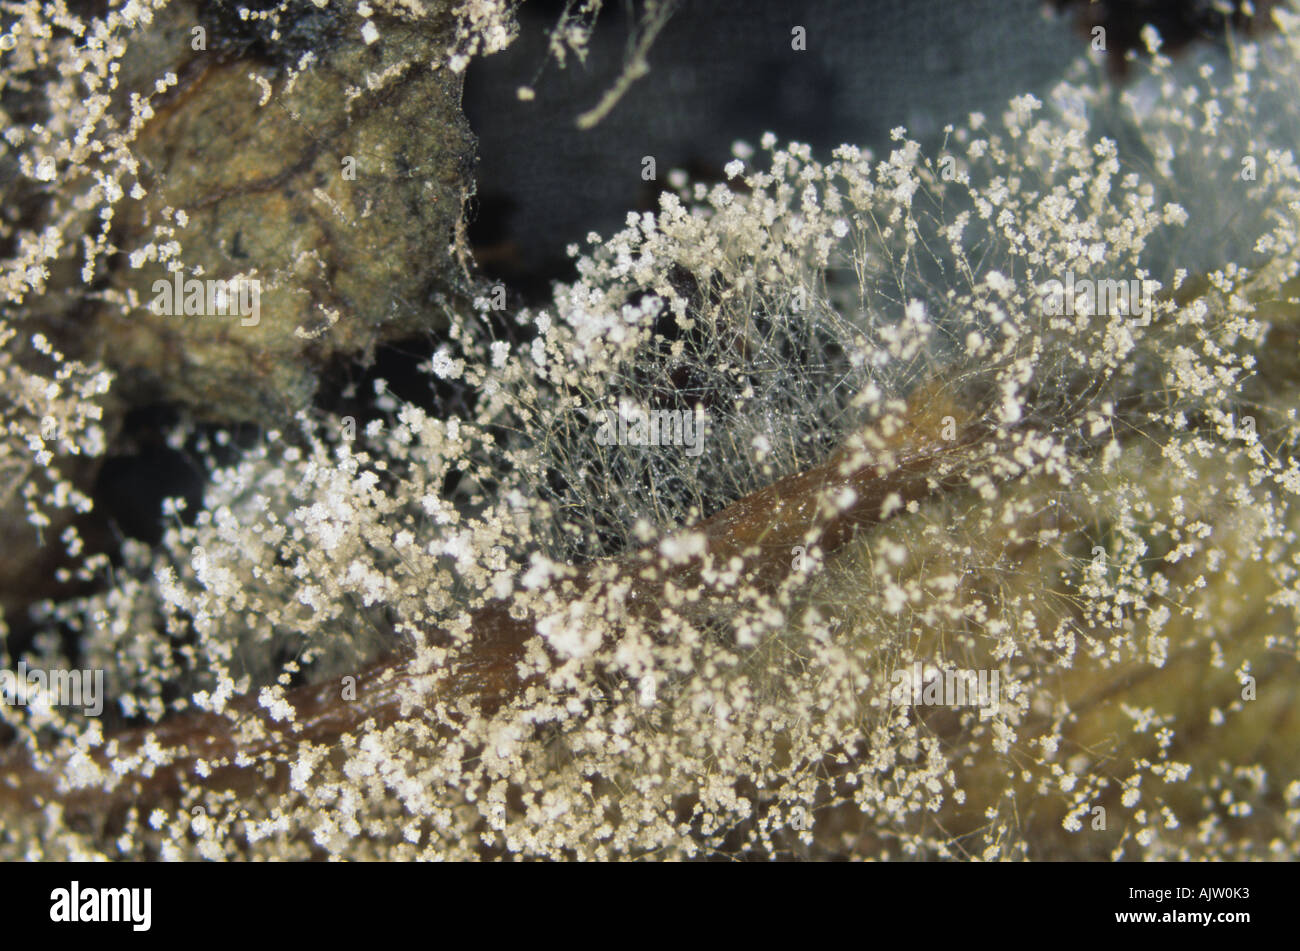 El moho gris Botrytis cinerea micelio sporulating sobre lechuga Foto de stock